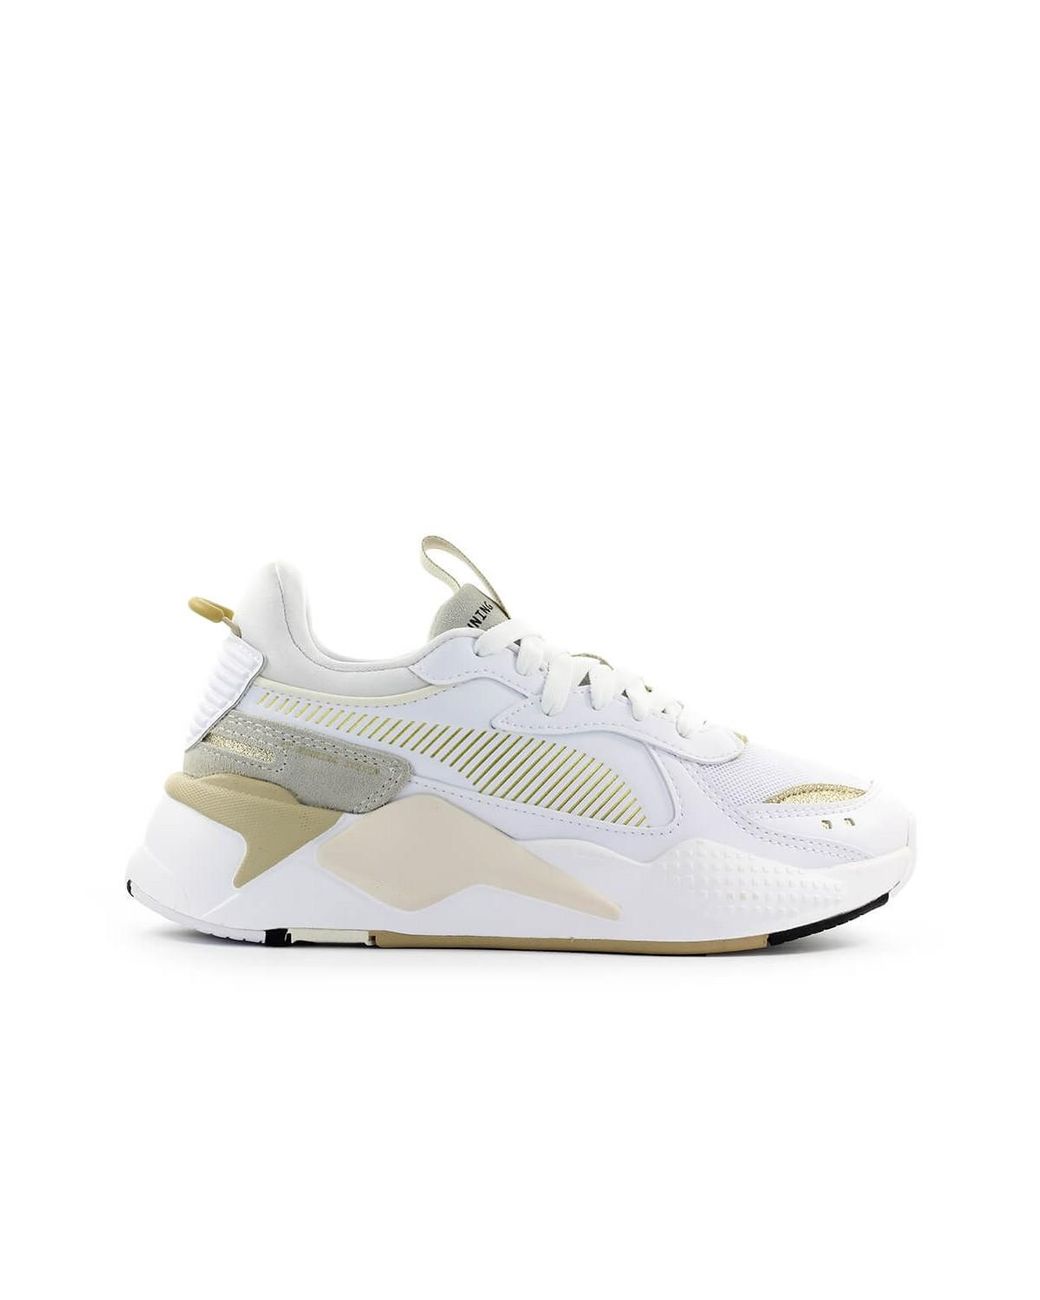 Geslaagd Vervreemden Vijfde PUMA Rs-x Mono Metal Wit Goud Sneaker in het Wit | Lyst NL